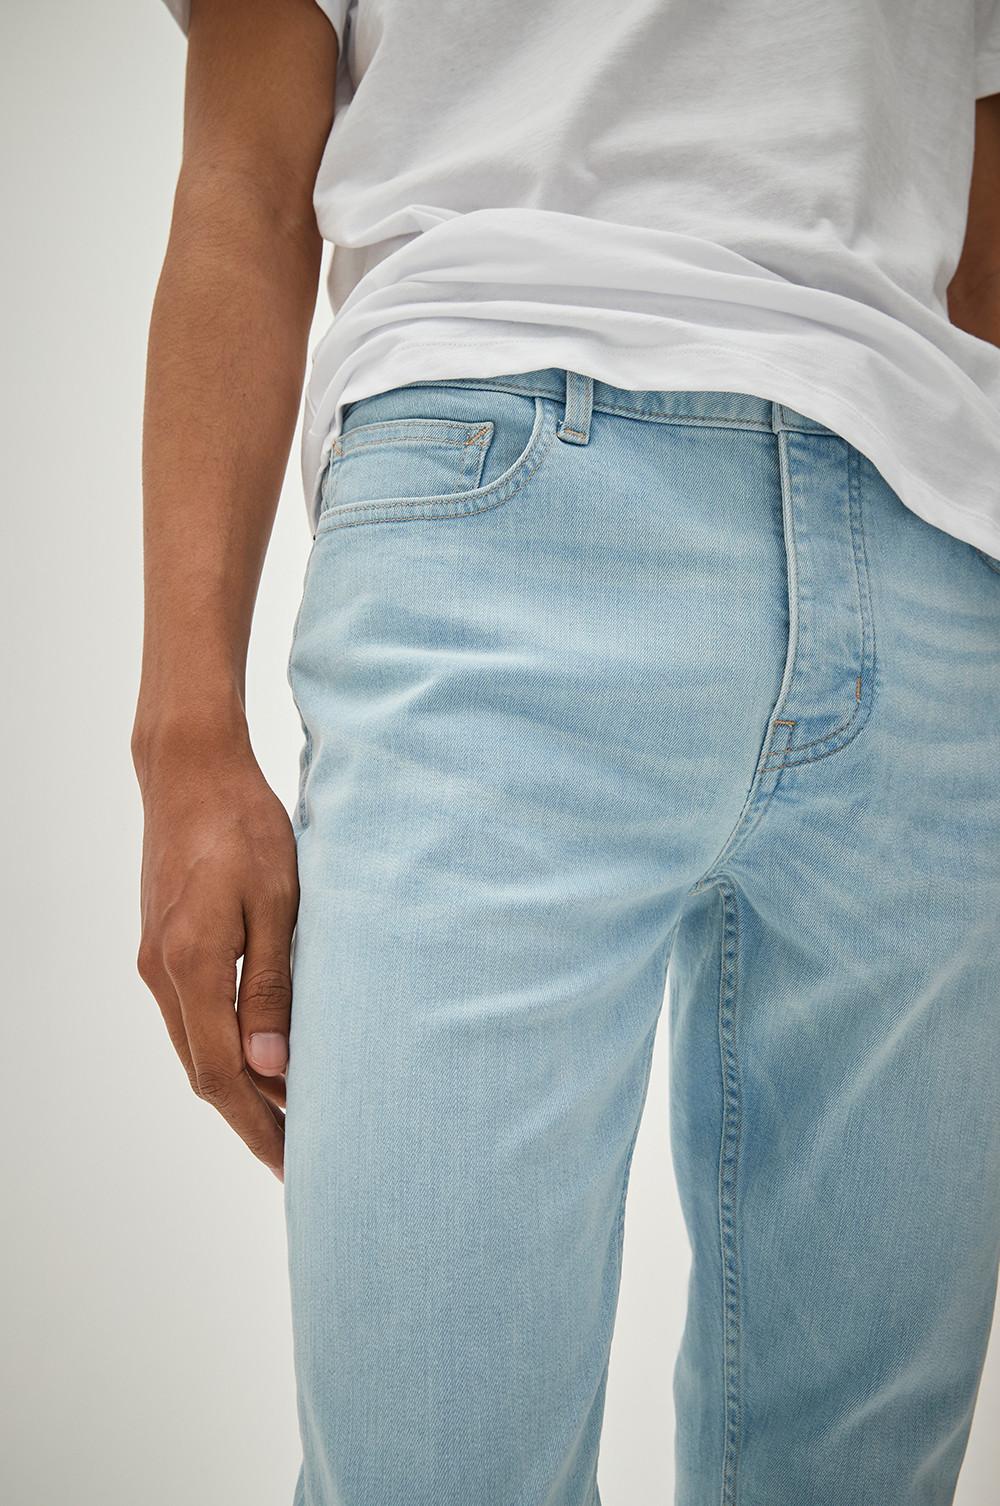 Model wearing light denim jeans